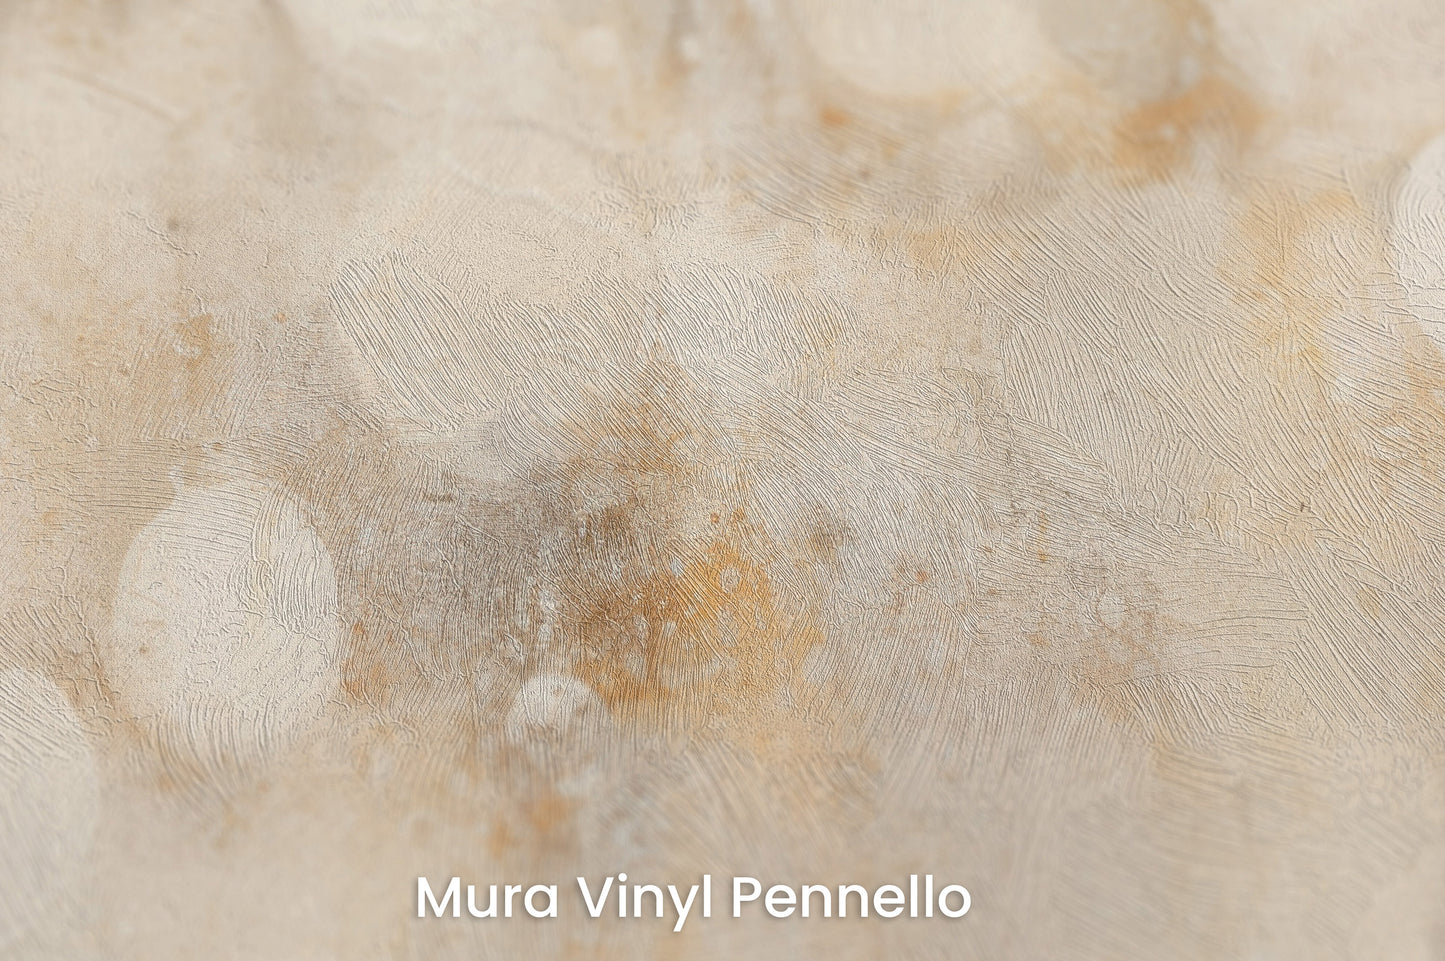 Zbliżenie na artystyczną fototapetę o nazwie TRANQUIL DAWN ORBS na podłożu Mura Vinyl Pennello - faktura pociągnięć pędzla malarskiego.